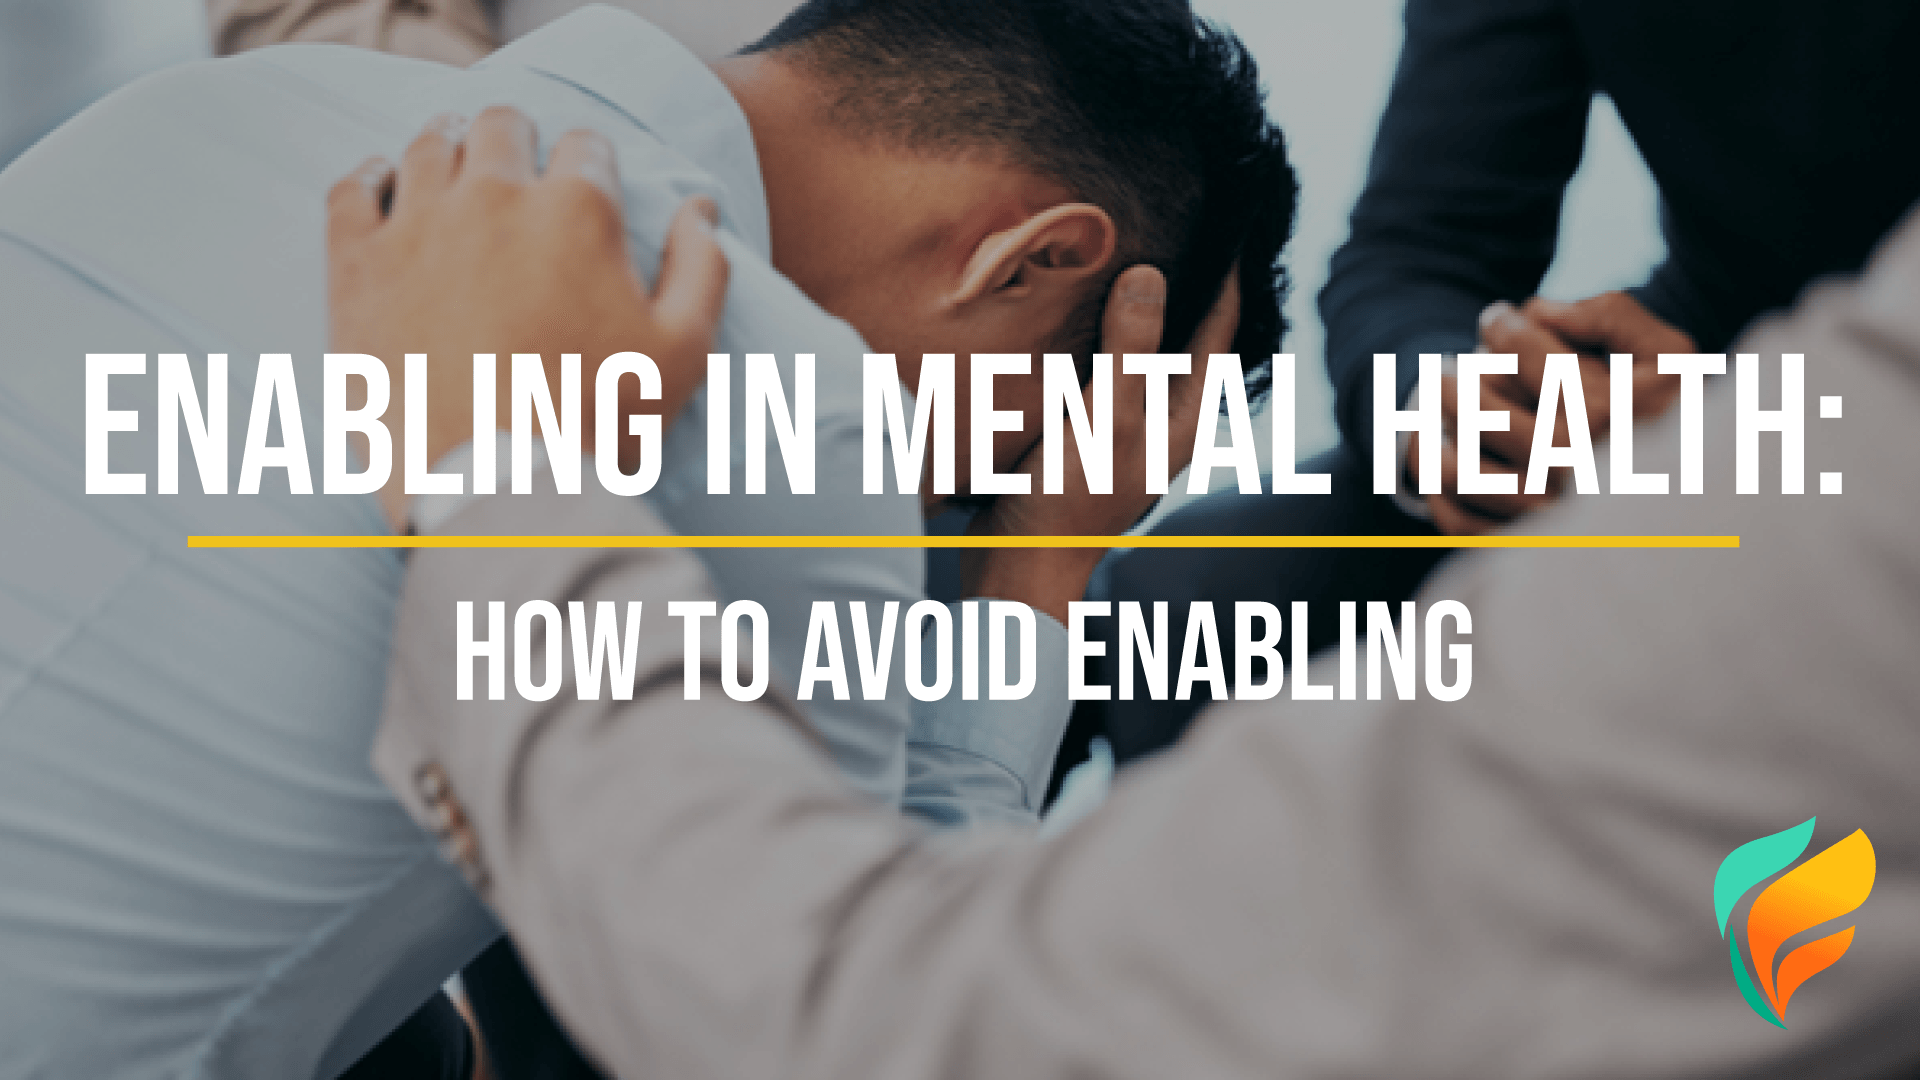 Enabling in Mental Health: How to Avoid It